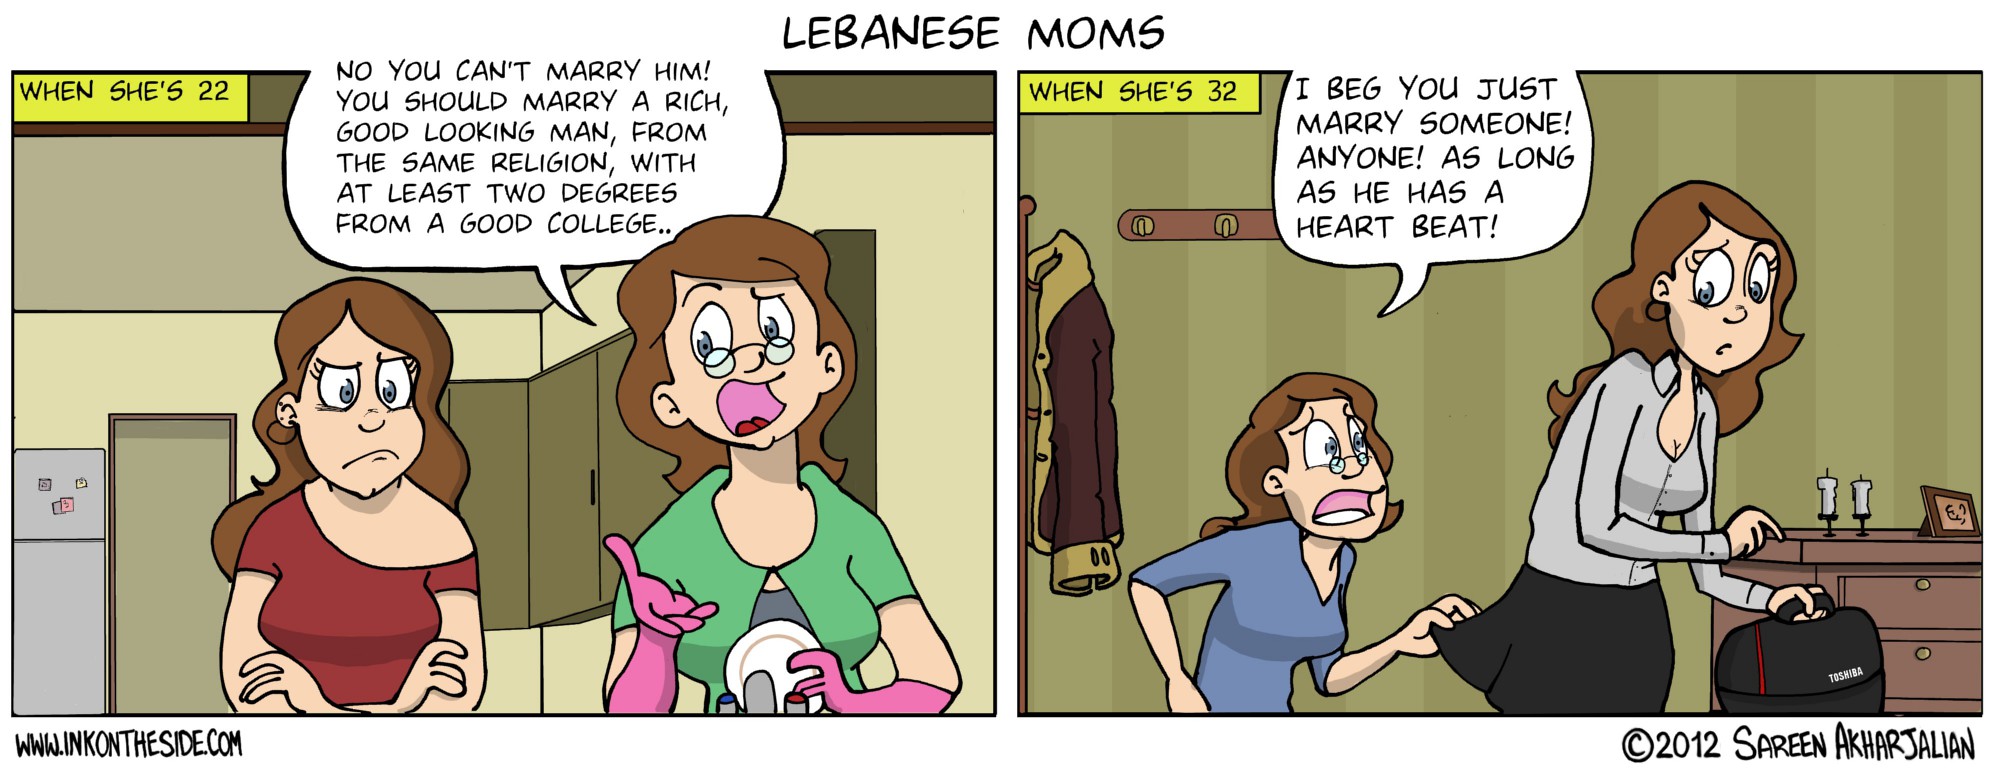 Lebanese Moms